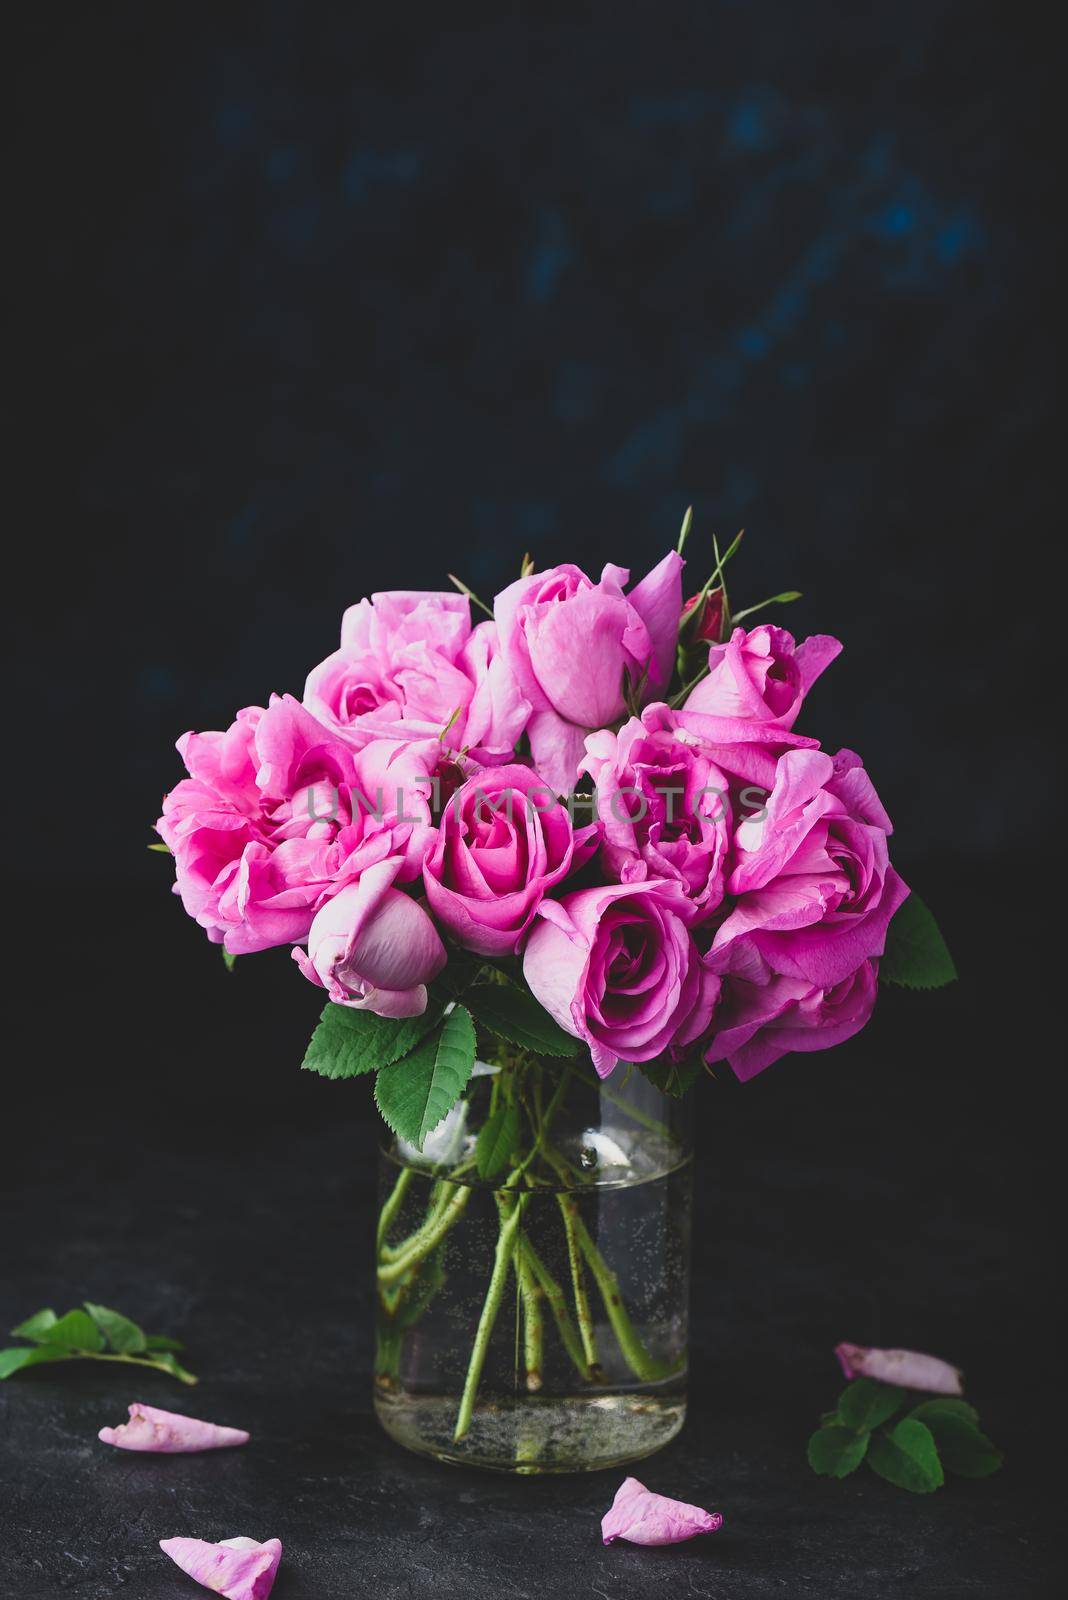 Small pink garden roses in vase by Seva_blsv